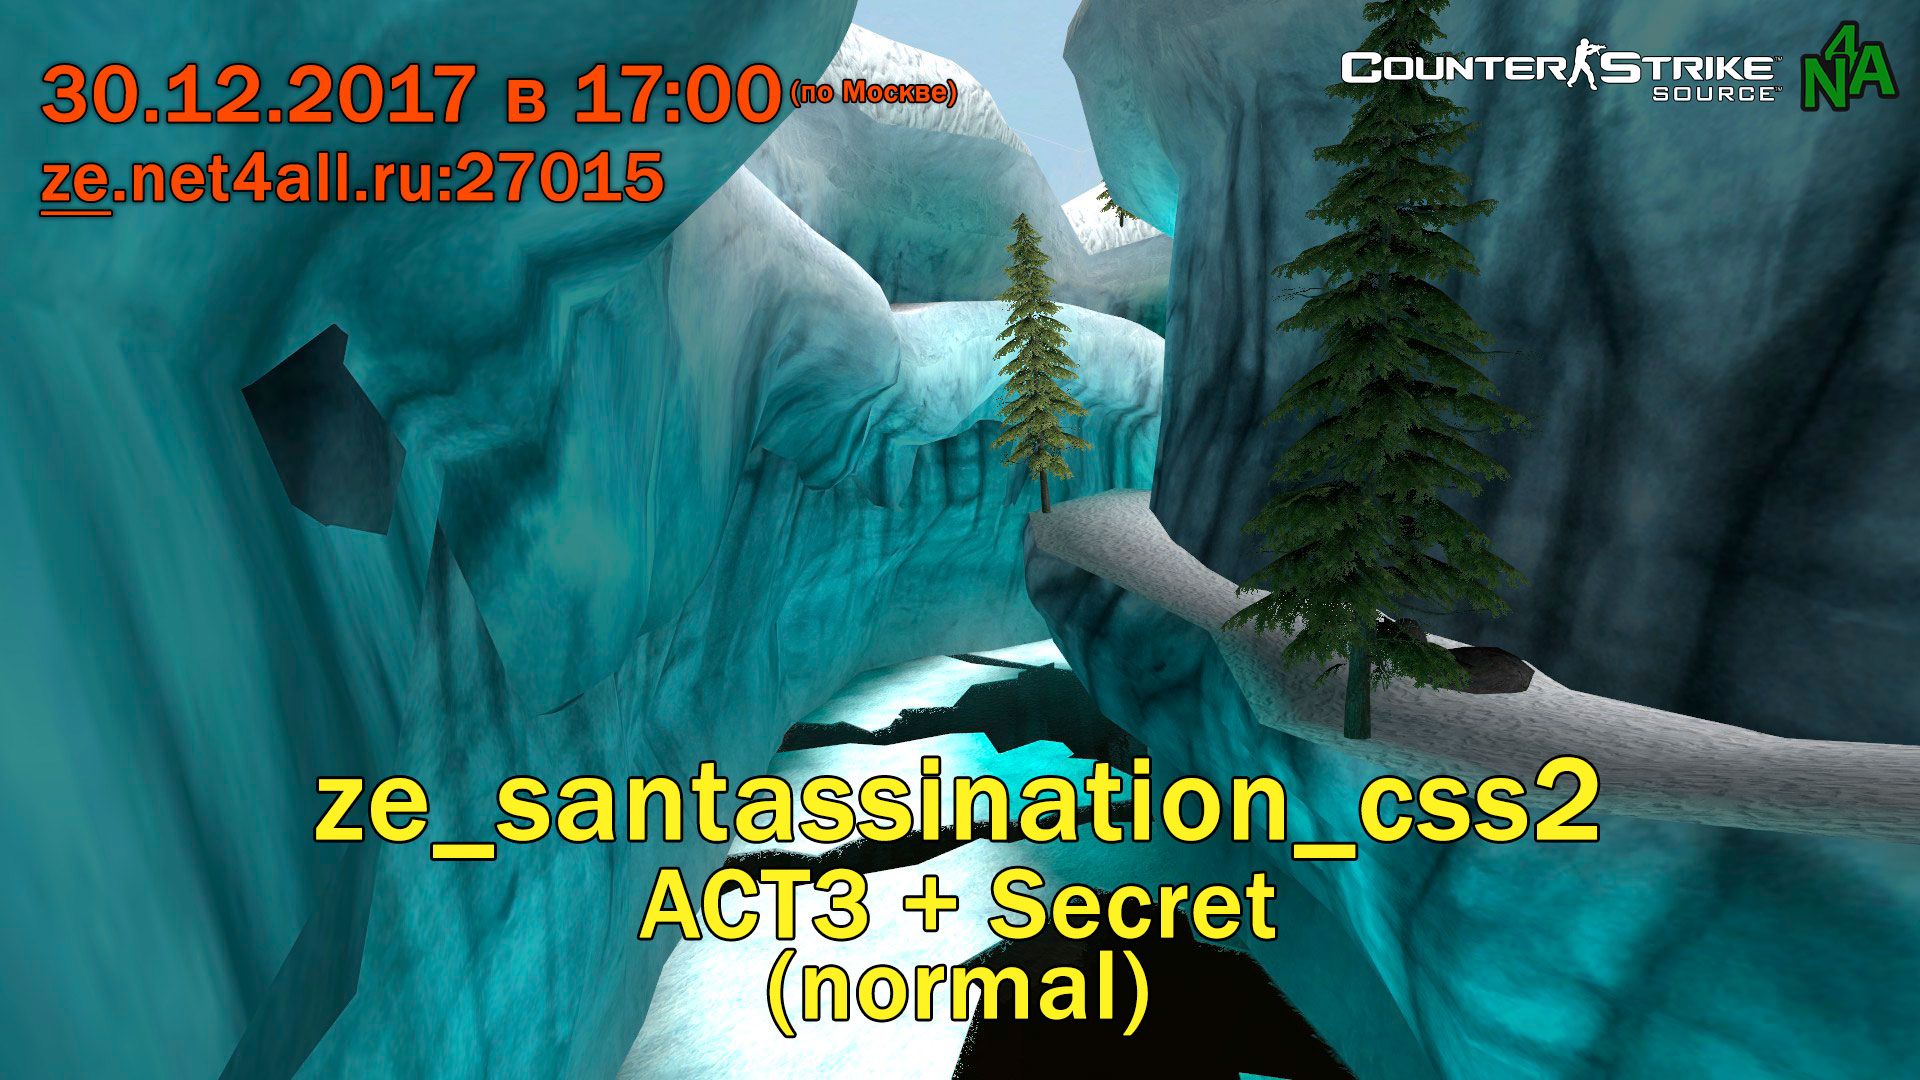 event_css_ze_santassination_css2_act3_secret_normal.jpg